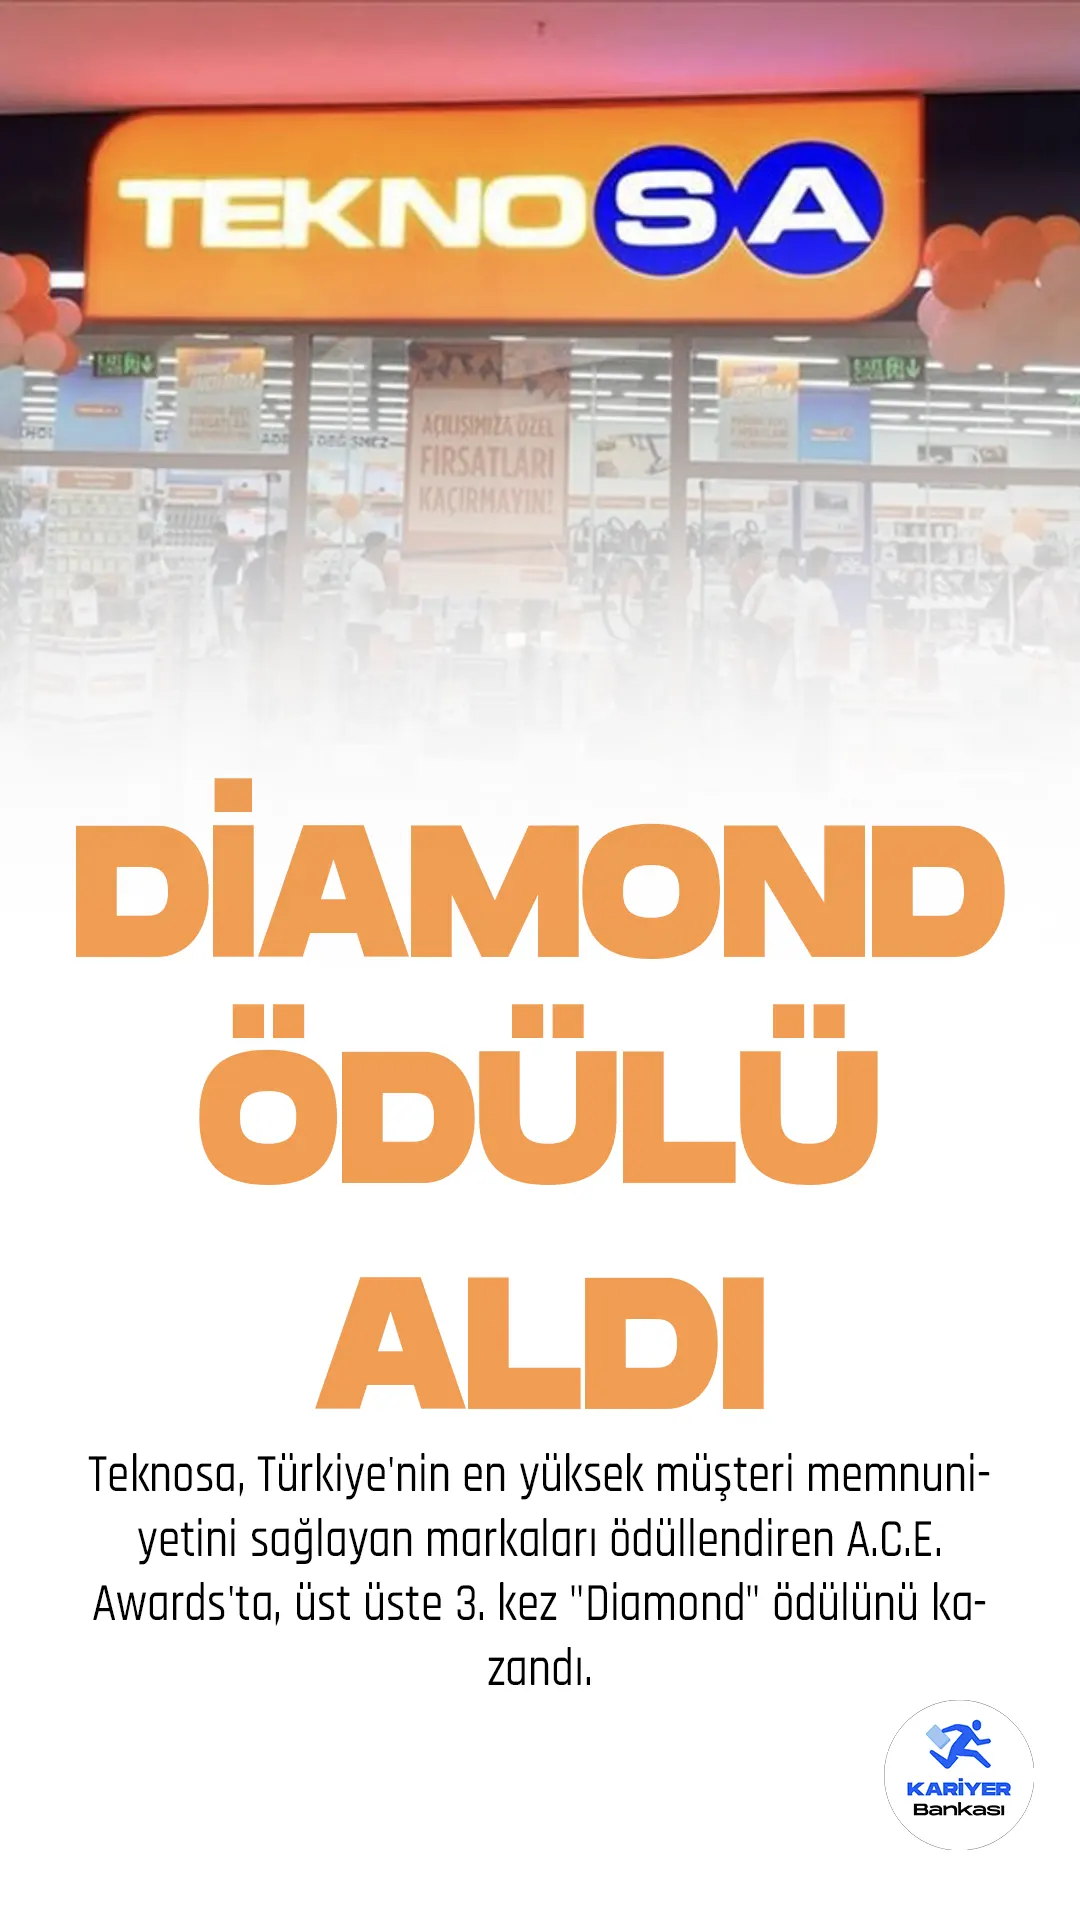 Teknosa, Türkiye'nin en yüksek müşteri memnuniyetini sağlayan markaları ödüllendiren A.C.E. Awards'ta, üst üste 3. kez "Diamond" ödülünü kazandı.